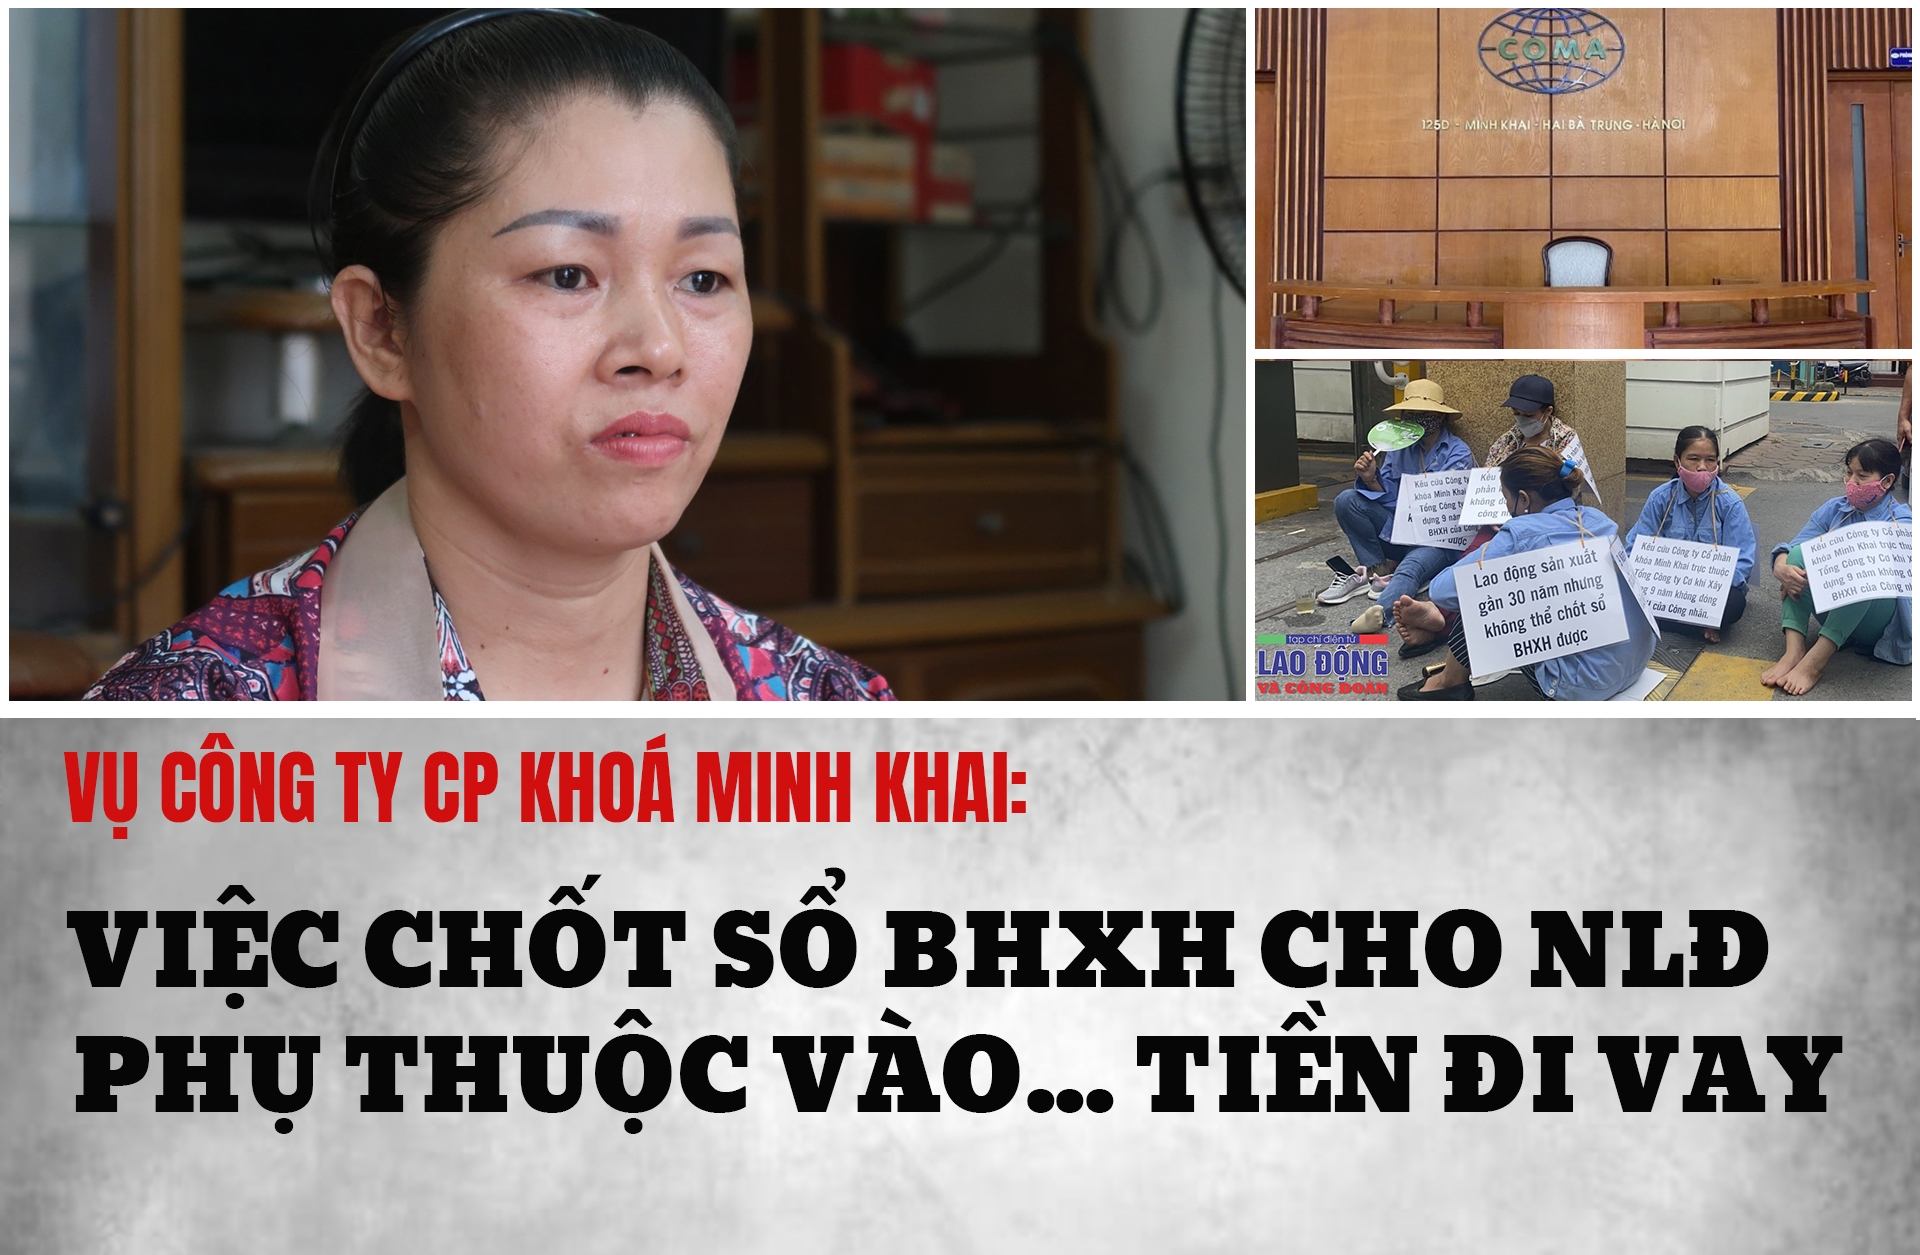 Vụ Công ty Khoá Minh Khai: Việc chốt sổ BHXH cho NLĐ phụ thuộc vào... tiền đi vay